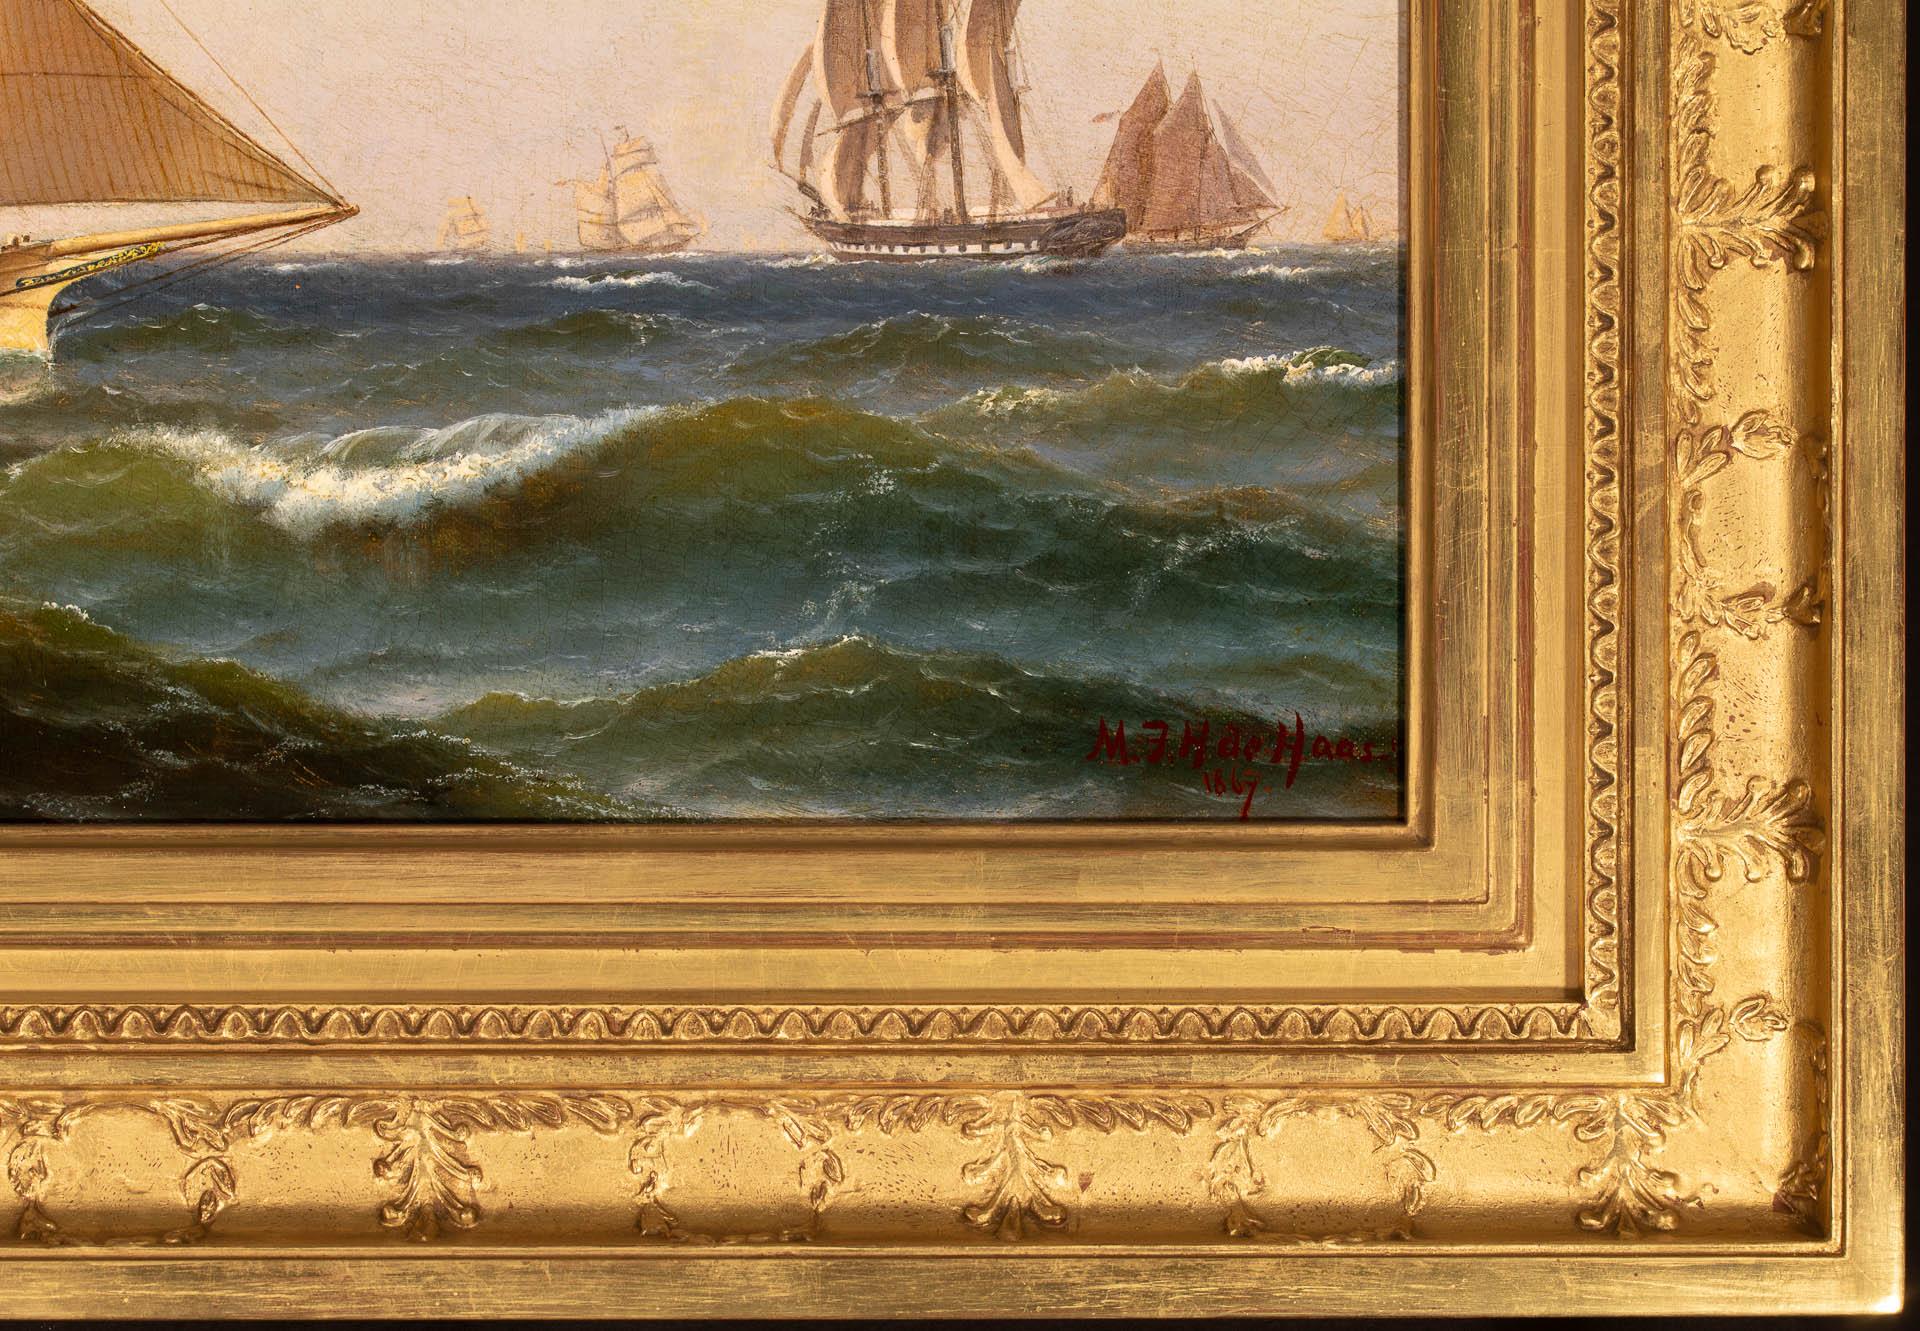 Dans cette œuvre de l'artiste néerlando-américain Maurtiz DeHaas, un marin habile guide un beau sloop à travers les eaux agitées d'un port américain très fréquenté. Compte tenu du chapeau de marin, qui semble être un chapeau en peau d'huile parfois